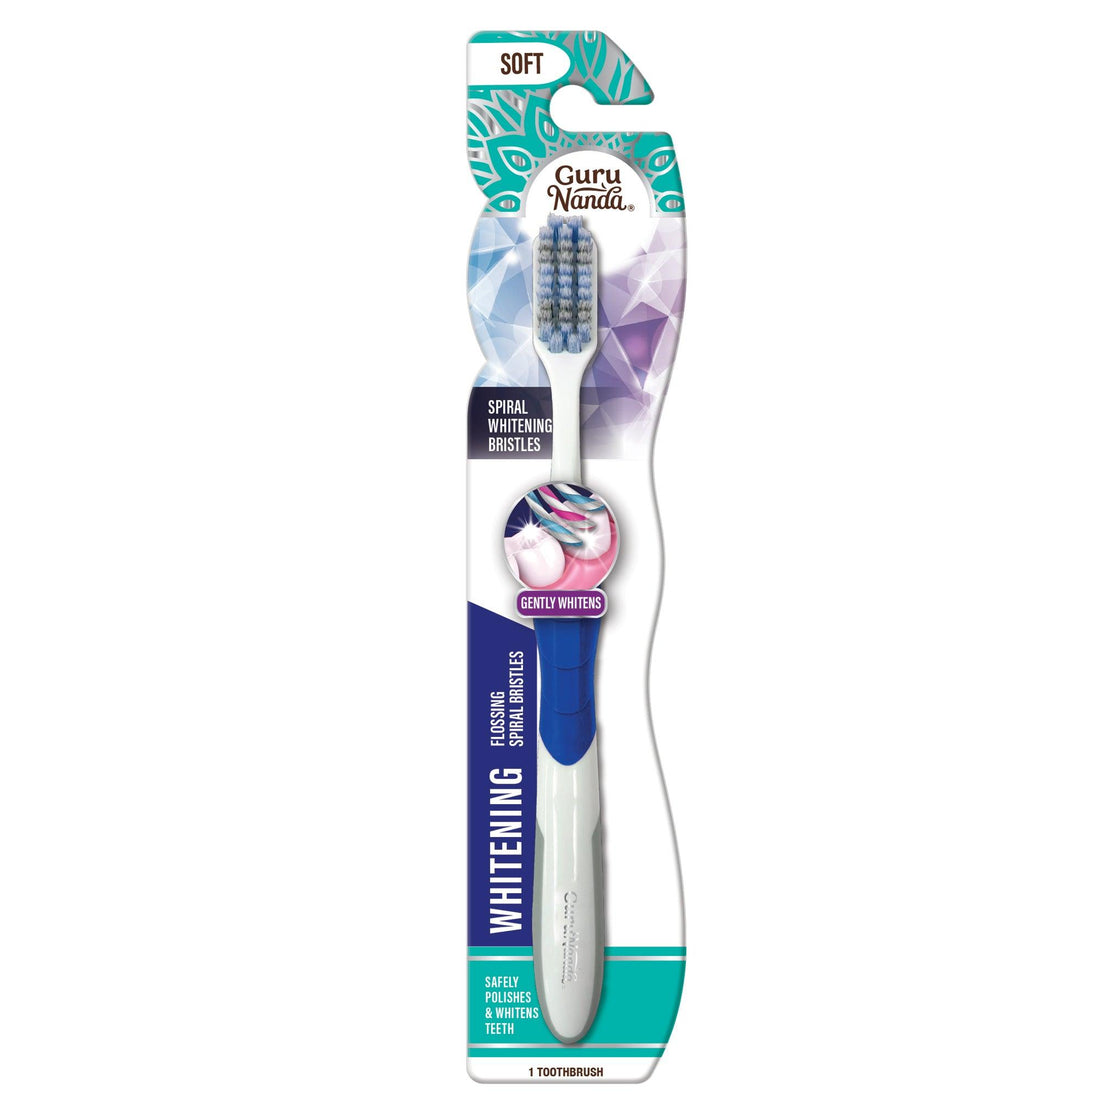 Gentle Giant Whitening Spiral Toothbrush (1 Pack) - GuruNanda